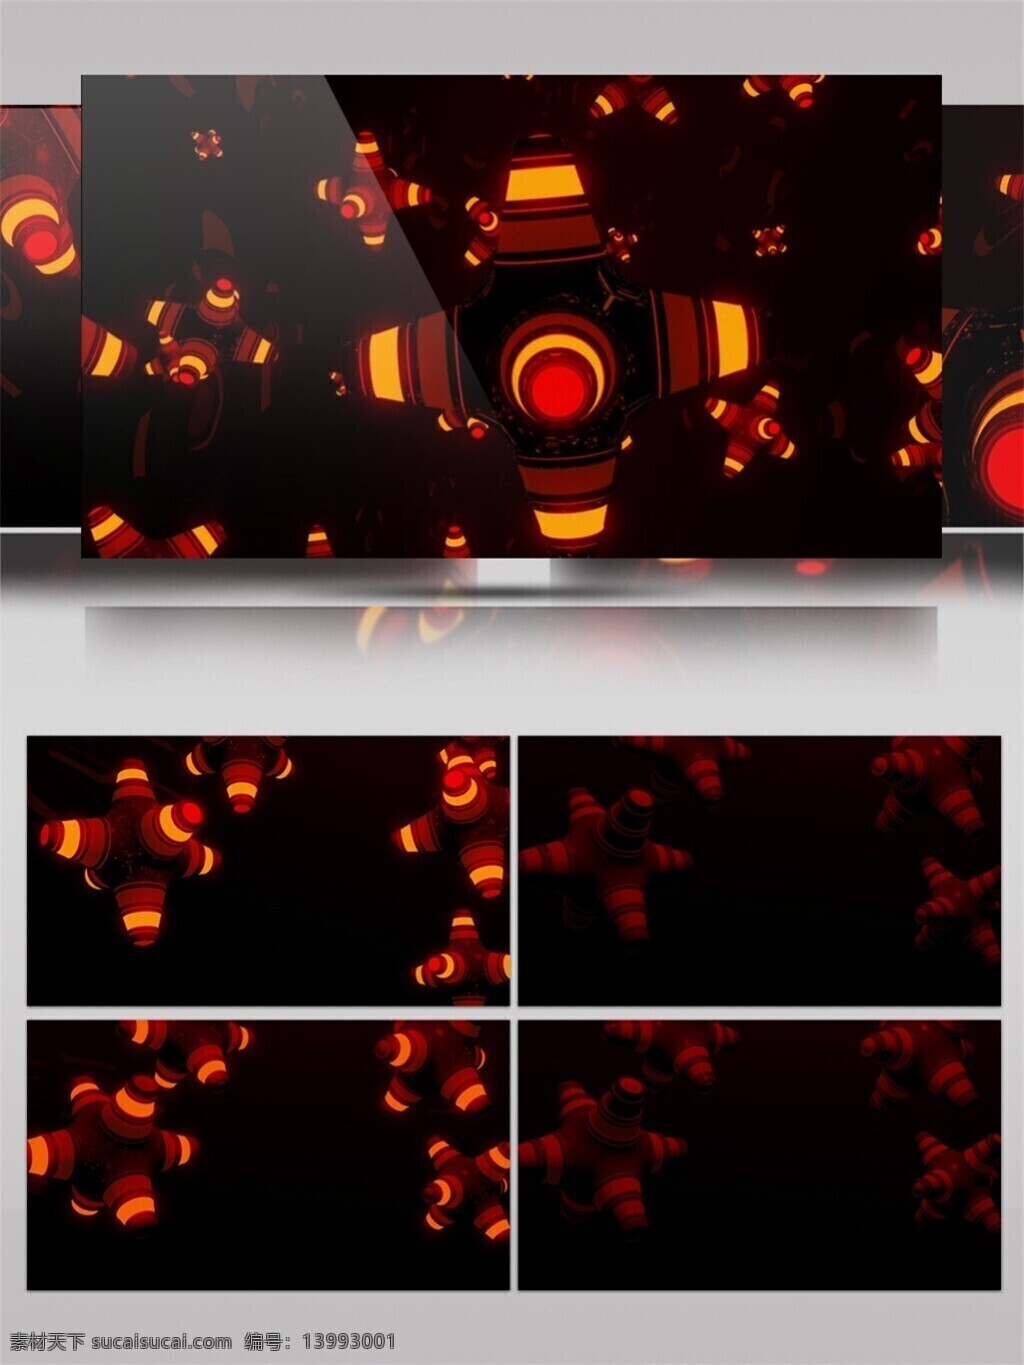 橙 光 梦幻 卫星 动态 视频 星际 橙色 激光 视觉享受 唯美背景素材 节目灯光